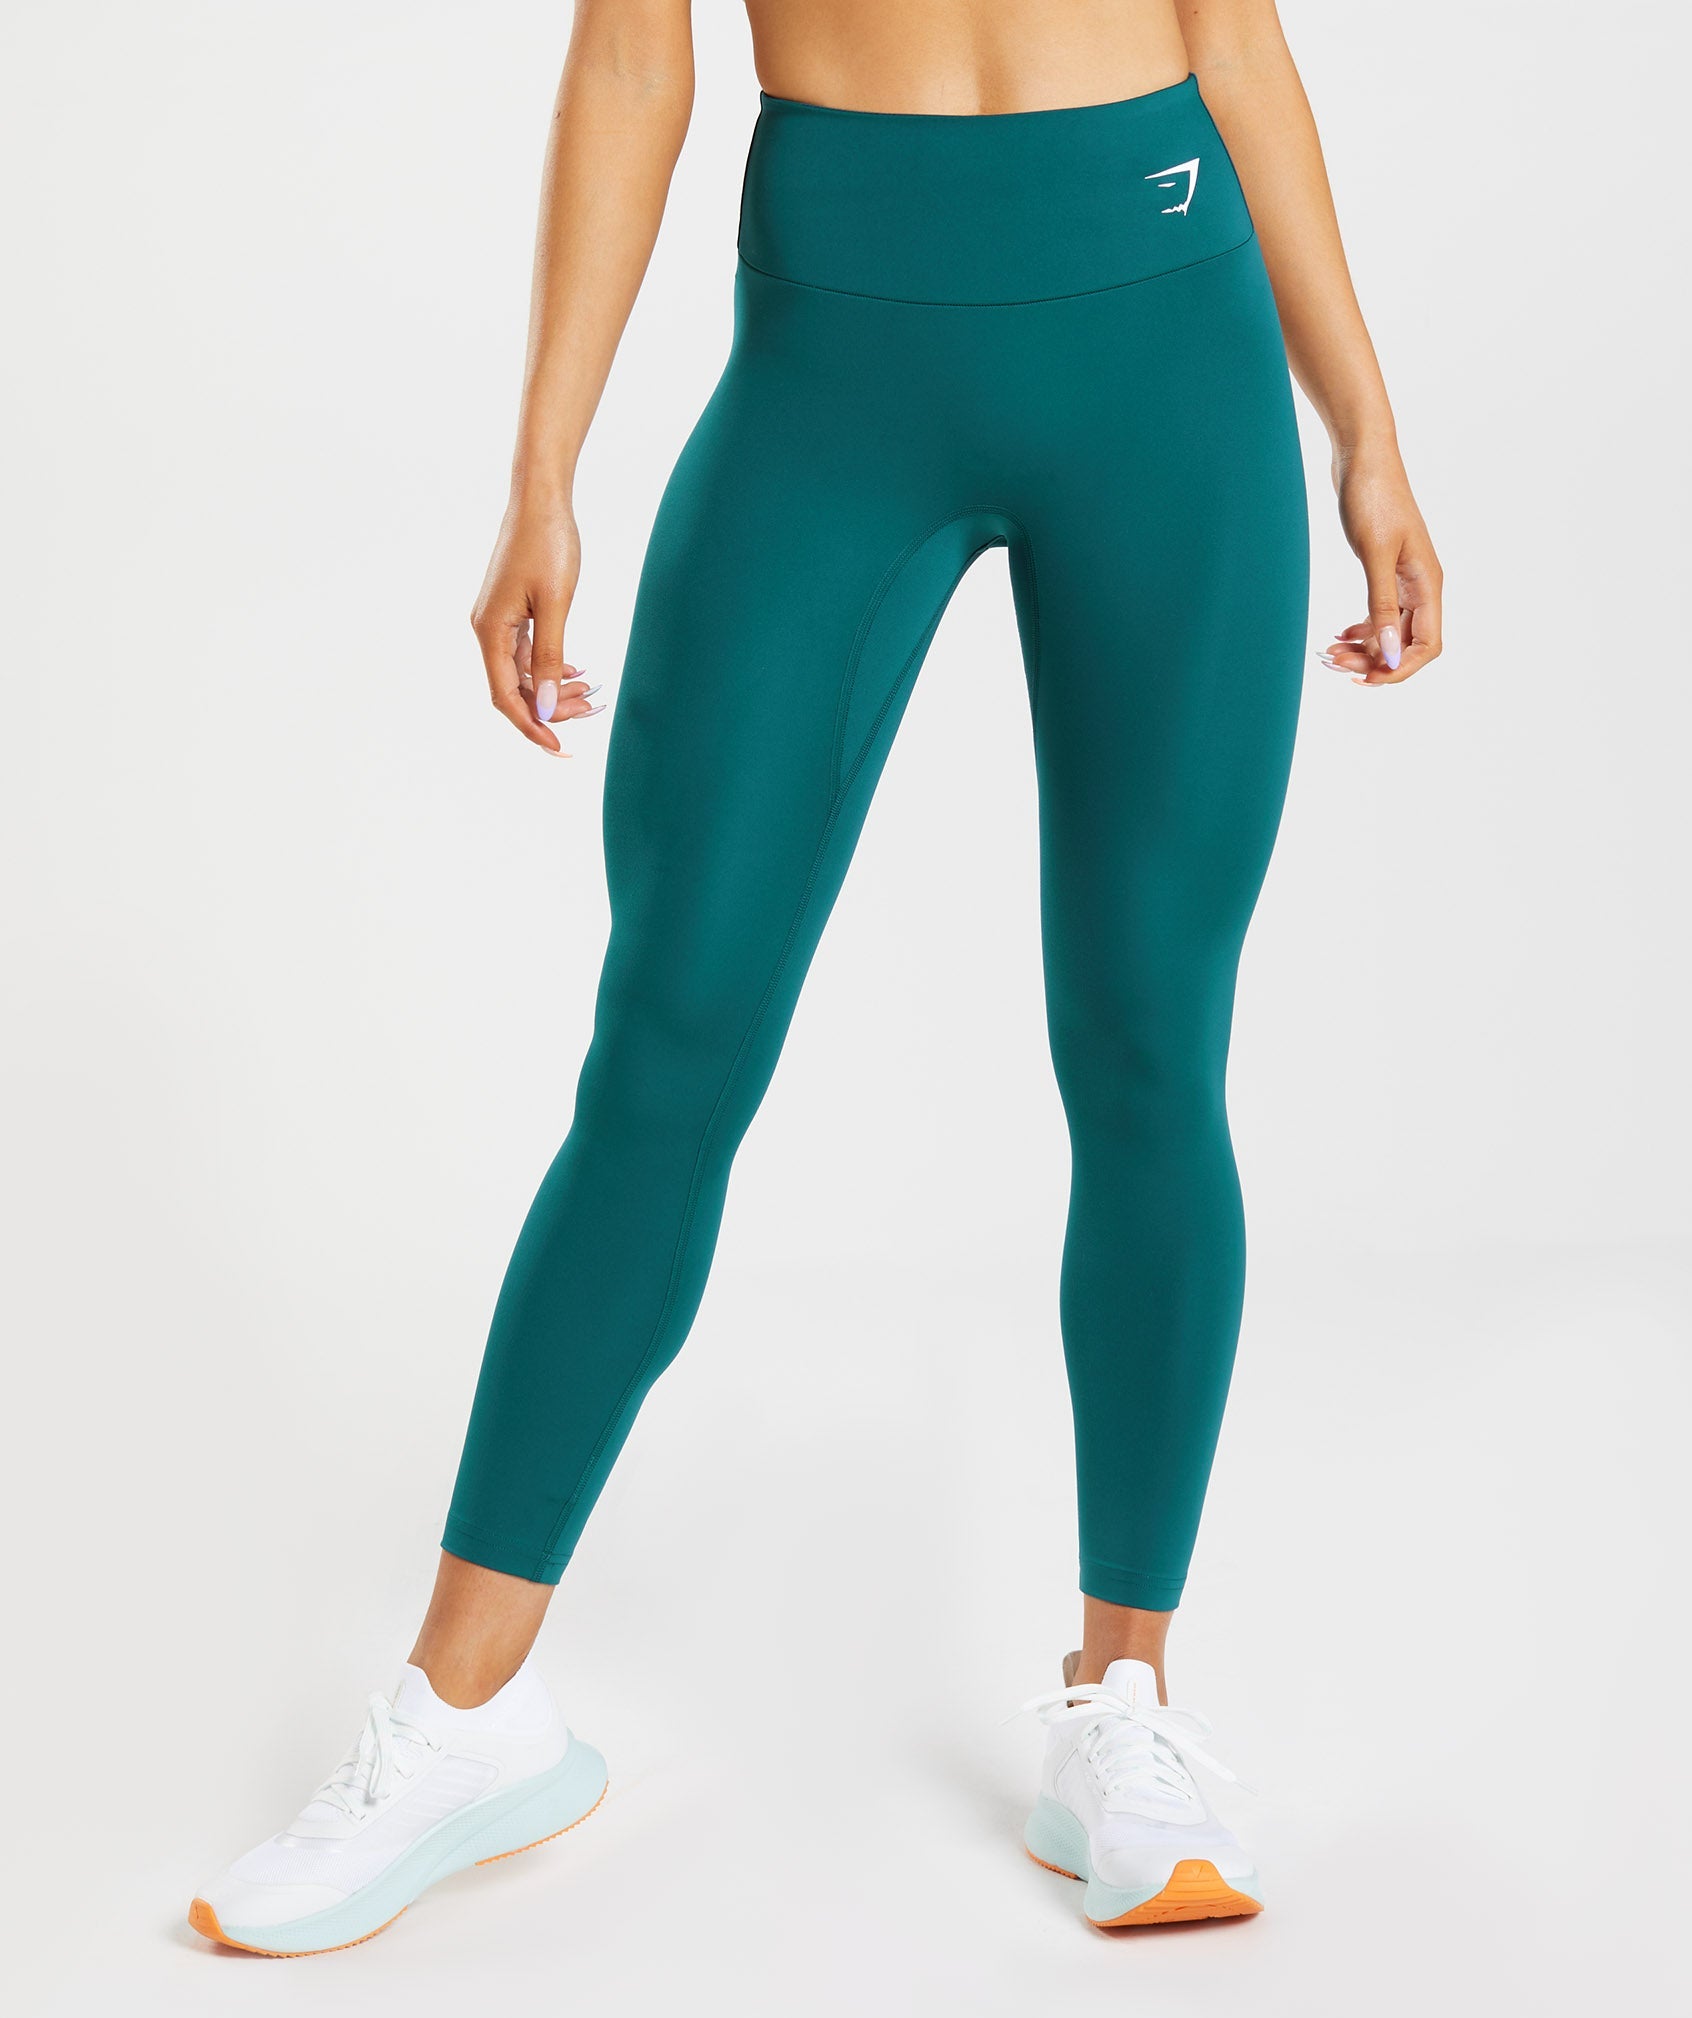 Buy Gaiam women sportswear fit training leggings deep teal combo Online